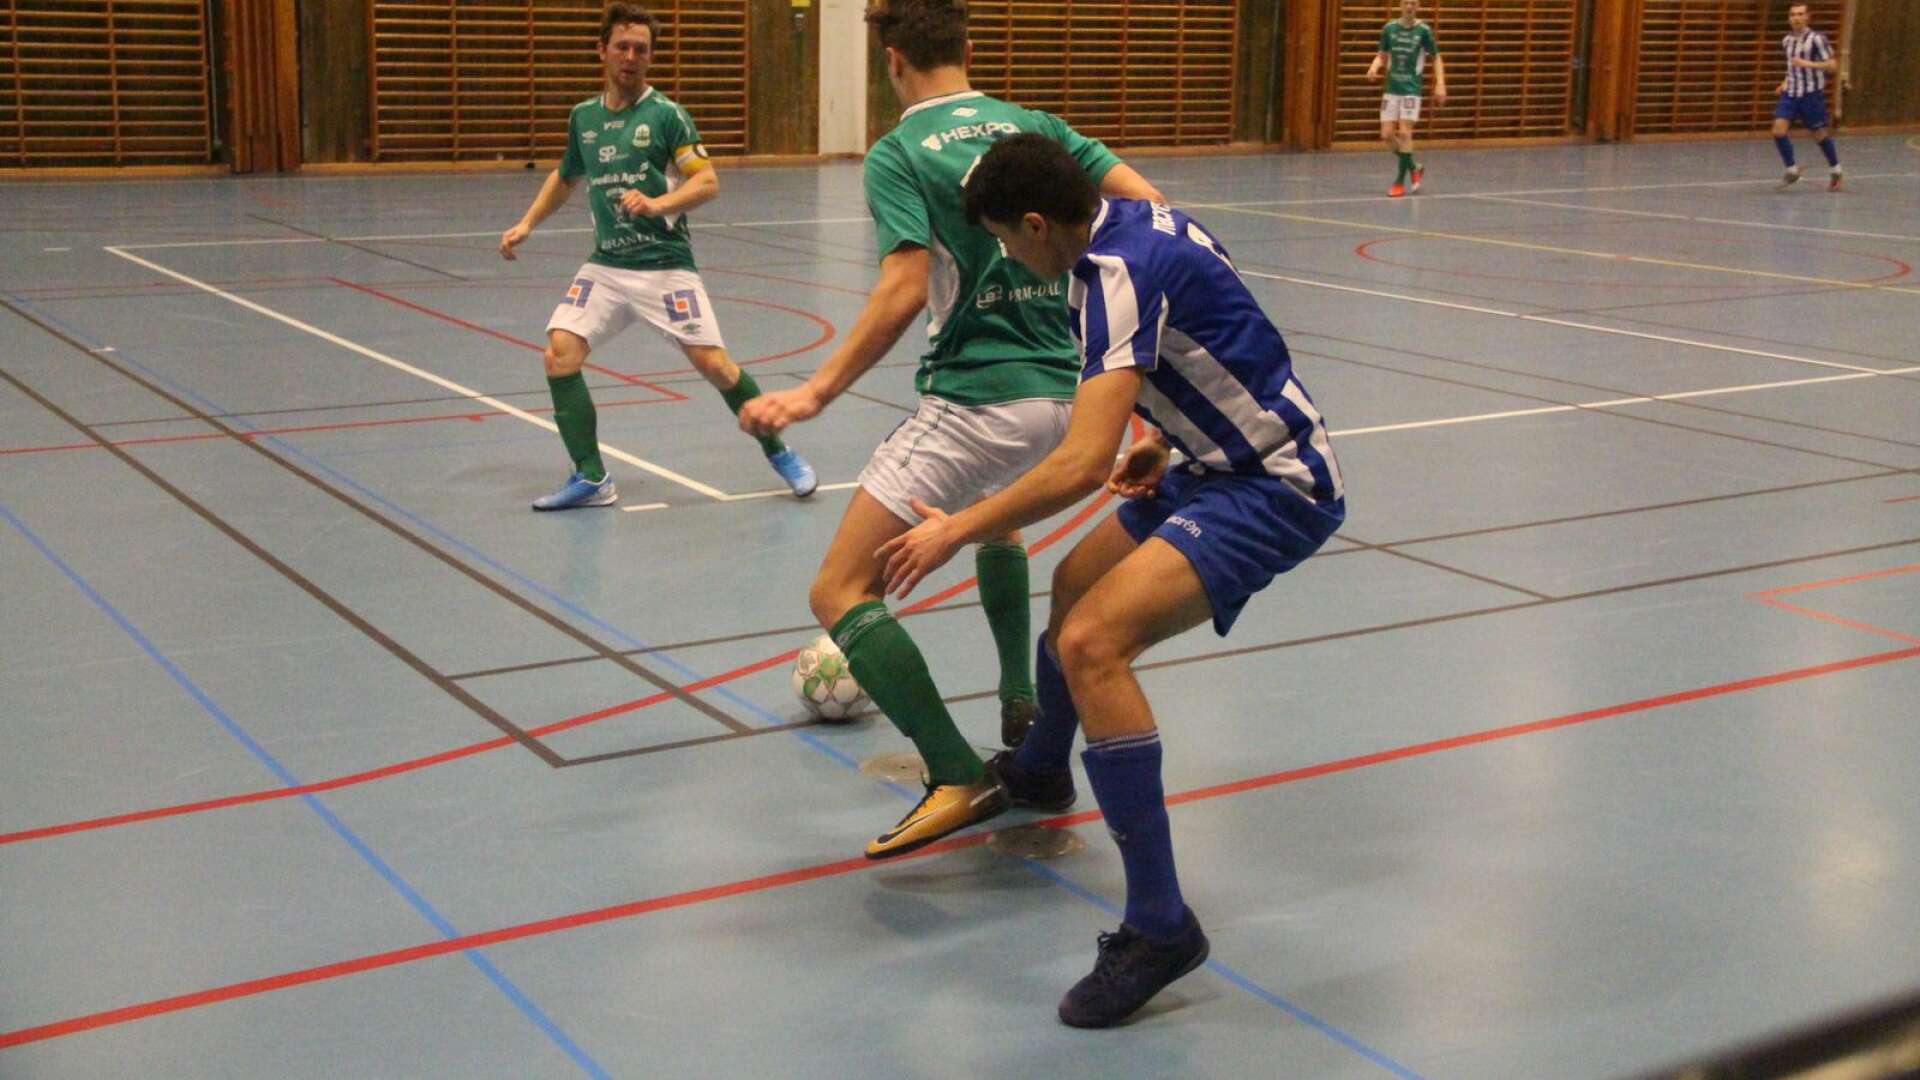 Finalen blev ett derby mellan grannkommunerna när Åmål och Säffle möttes. Det blev en hård kamp på planen, som Åmål gick segrande ur med 1–0.